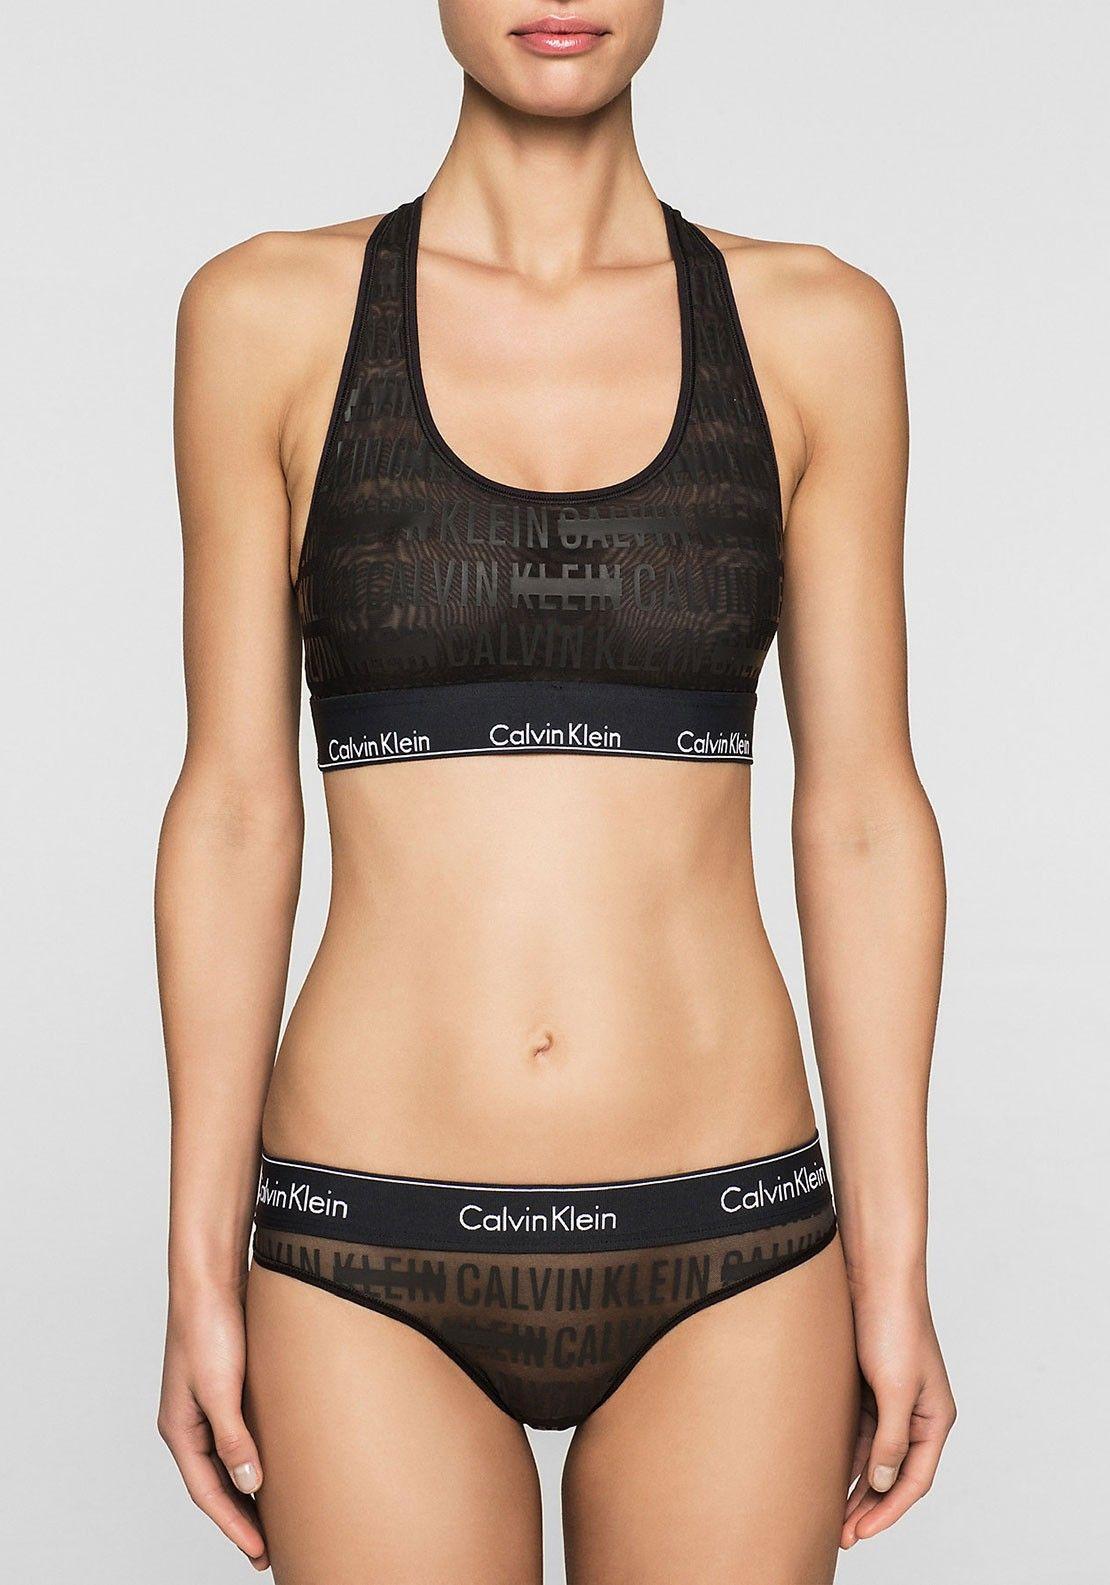 Sheer Logo - Calvin Klein Sheer Logo Bralette, Black | McElhinneys